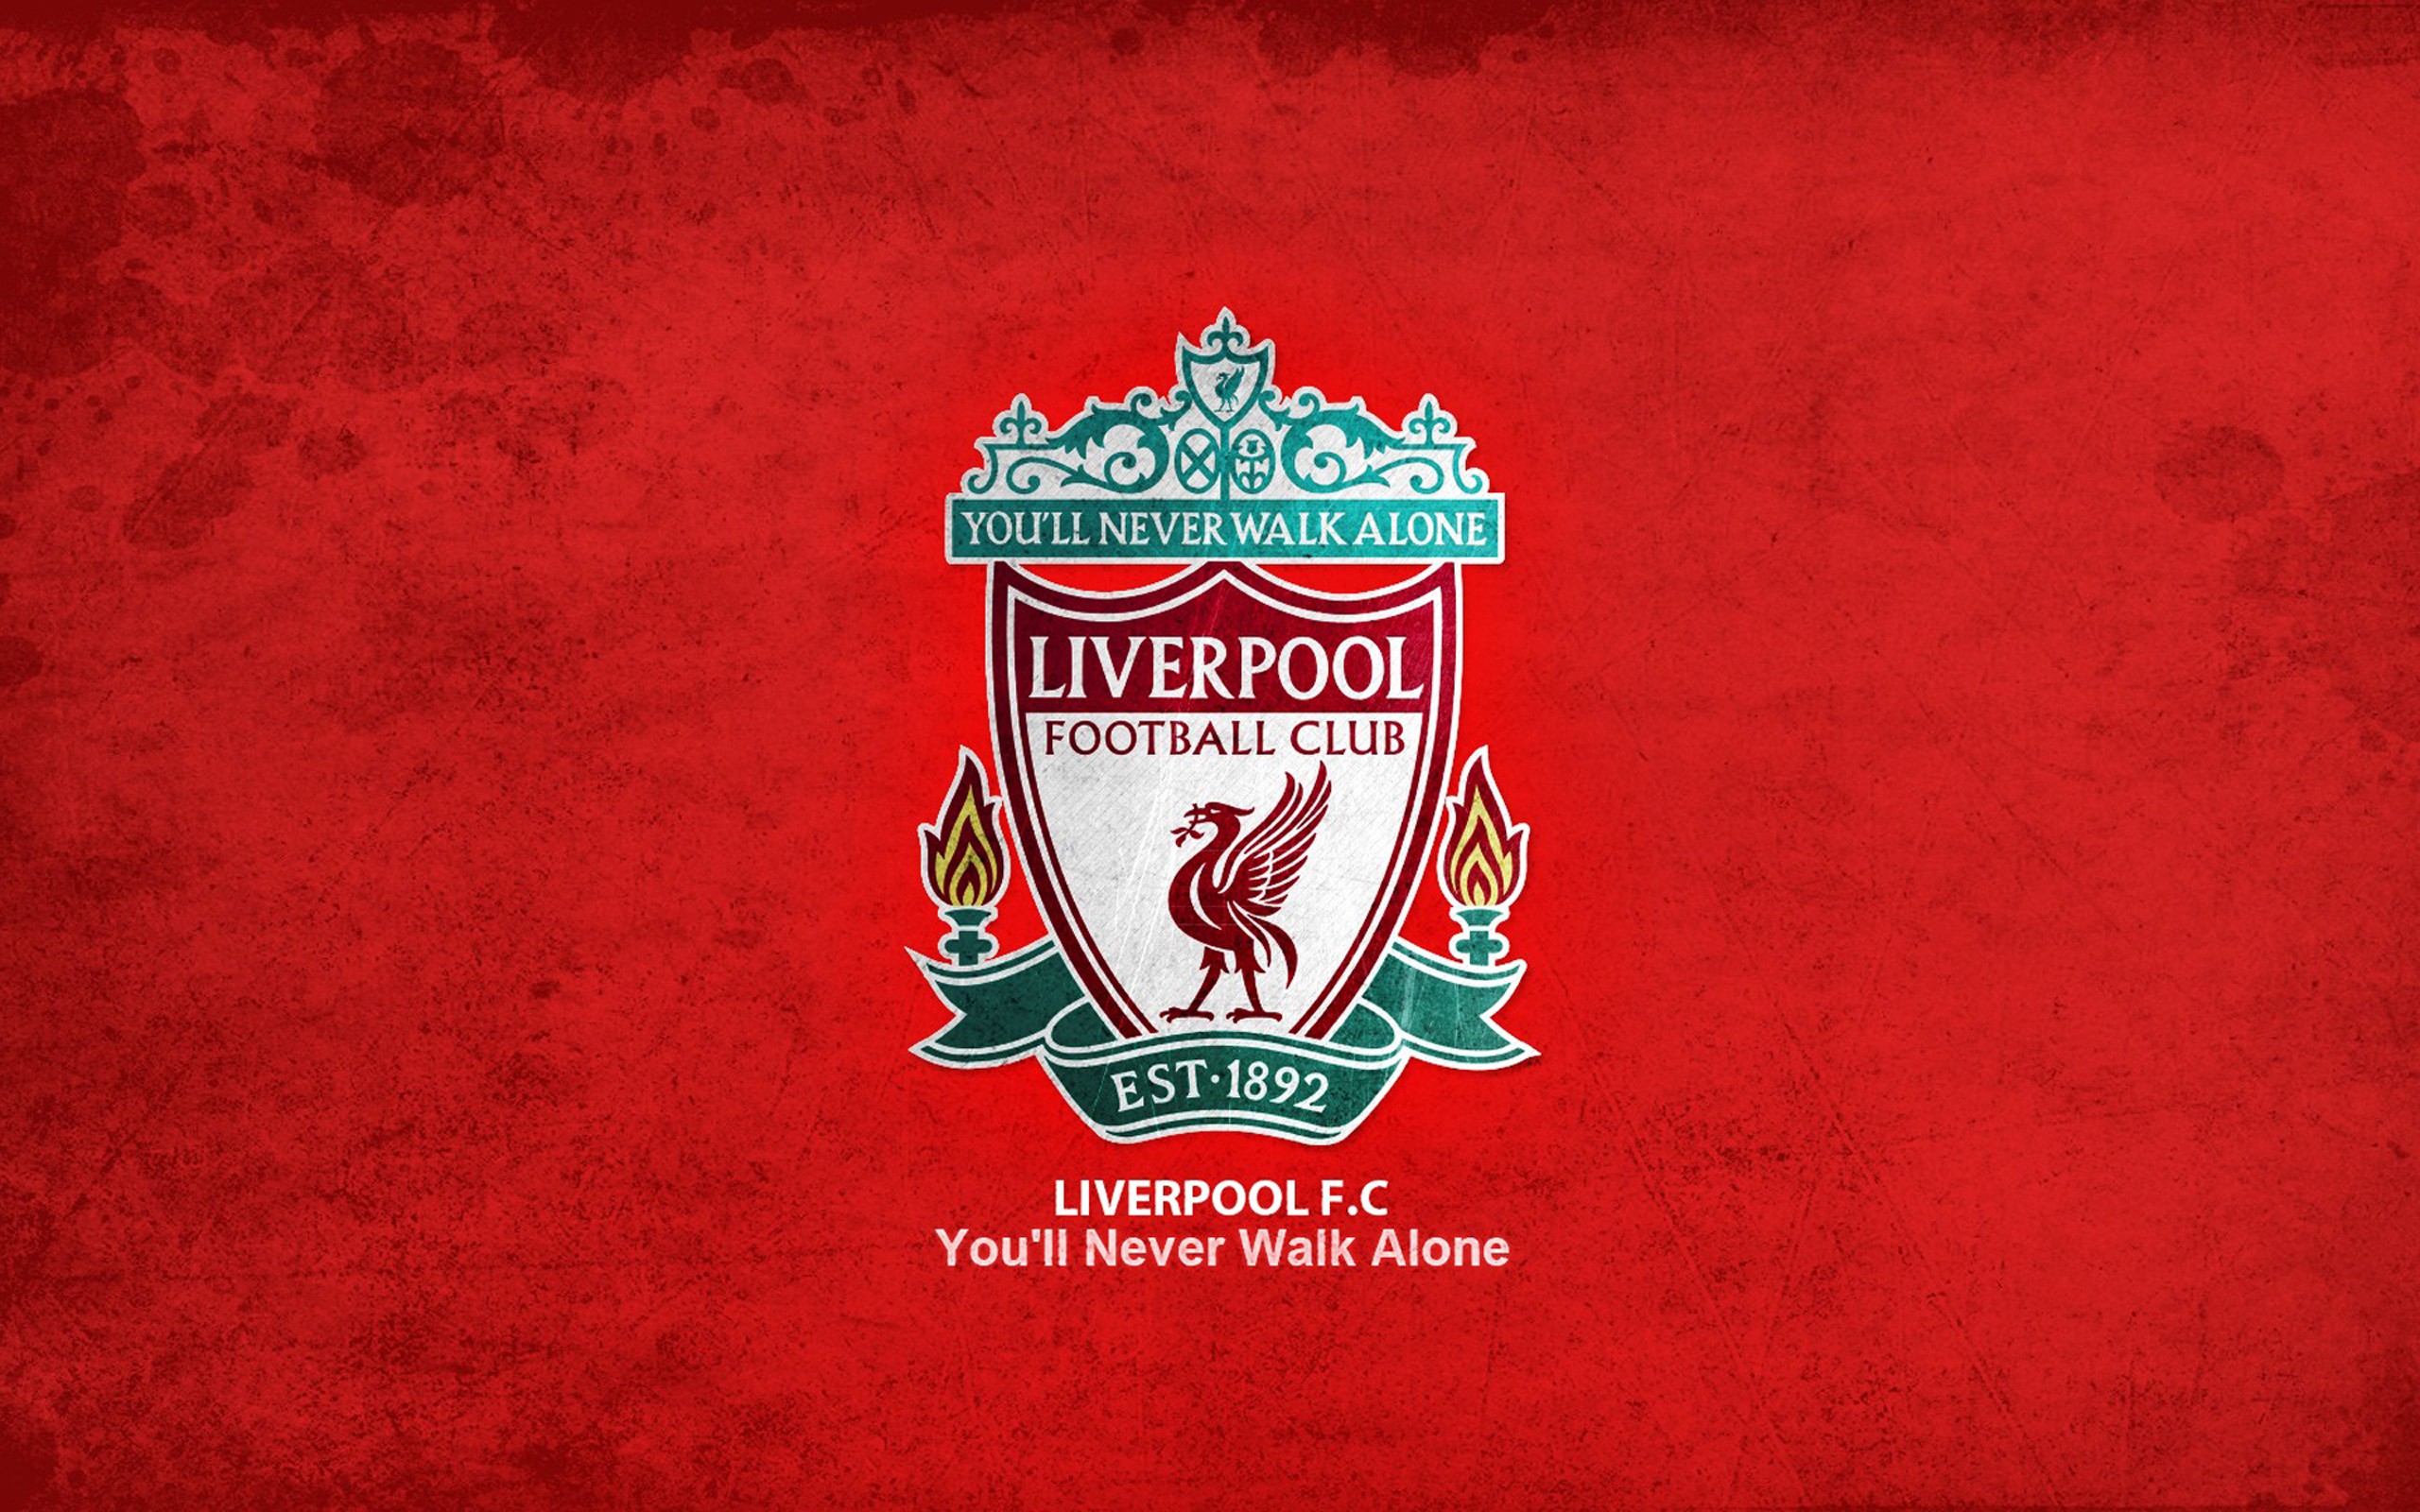 Liverpool FC desktop wallpaper: Bạn đang tìm kiếm một hình nền đẹp để trang trí cho máy tính của mình? Hãy tải về các hình nền Liverpool FC. Độ phân giải cao, độ sắc nét vượt trội sẽ làm bạn cảm thấy hài lòng và dễ chịu trong khi làm việc.